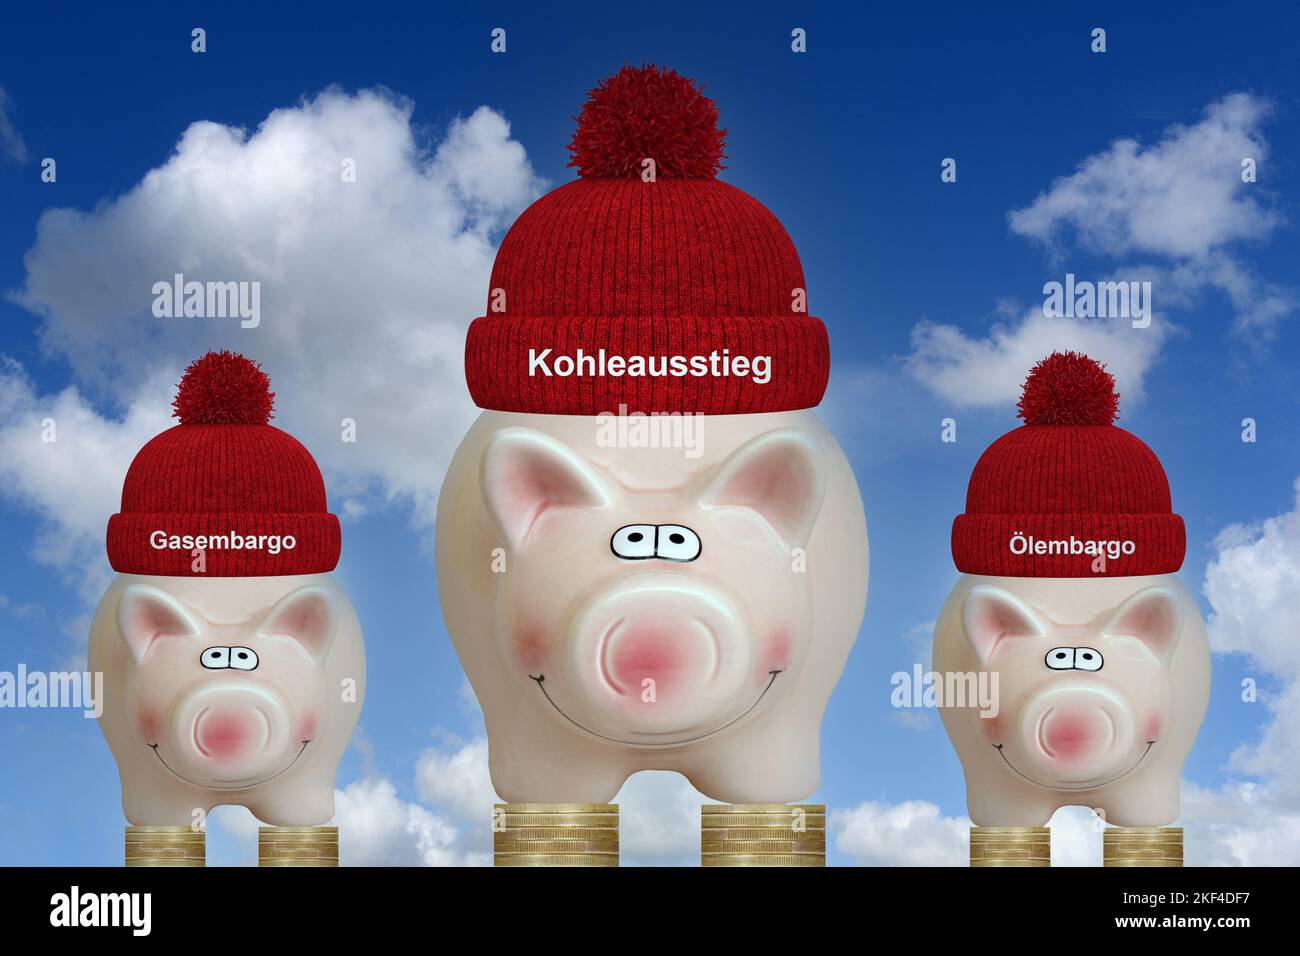 Drei rosa Sparschweine mit Pudelmütze, warm anziehen, Energiekrise, harter Winter, frieren, Heizung drosseln, Gasembargo, Ölembargo, Kohleausstieg, Foto Stock